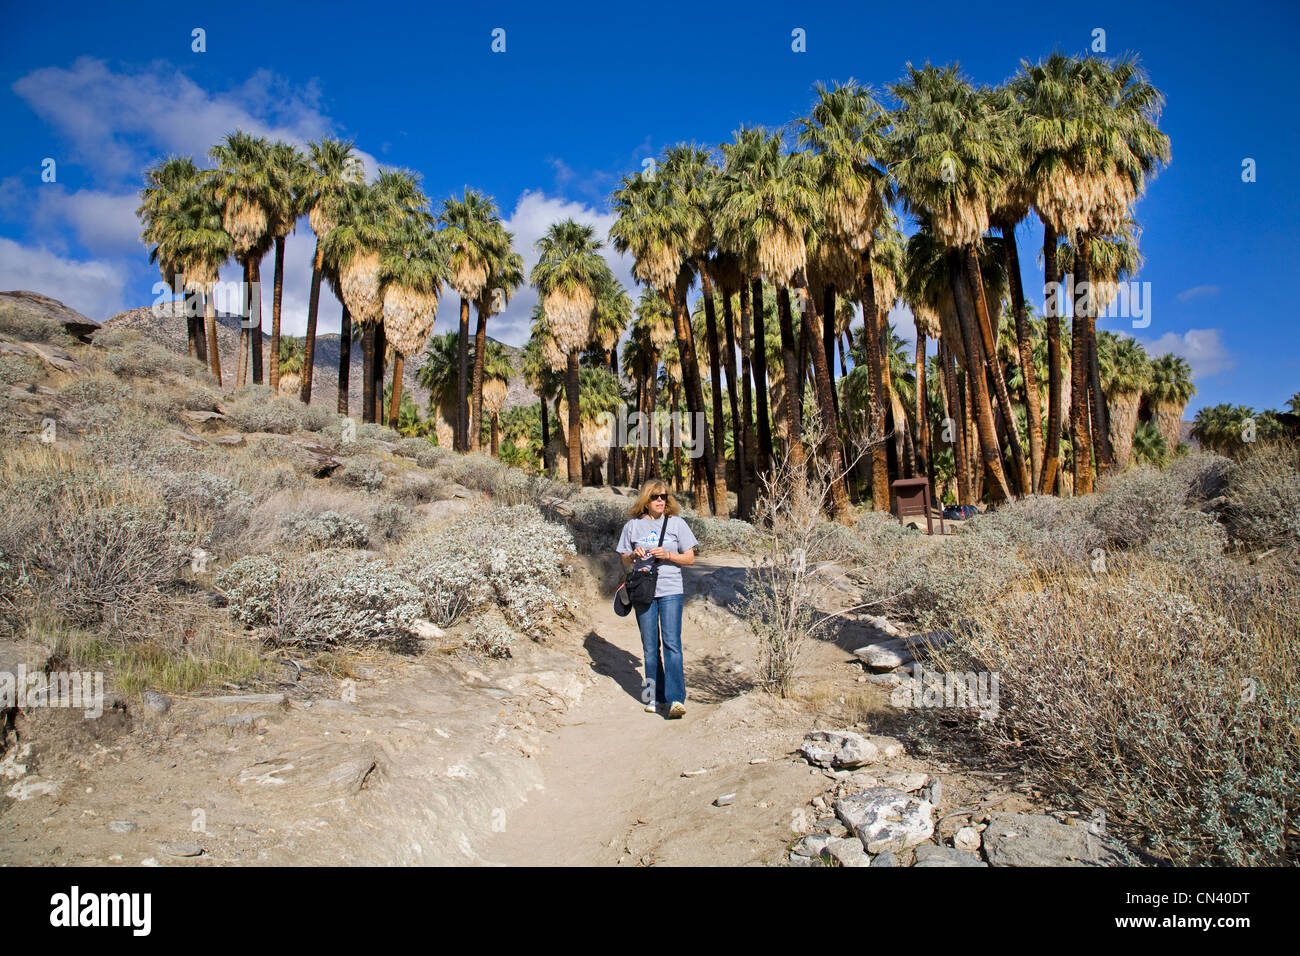 Un randonneur en Andreas Canyon, les Canyons Indiens, près de Palm Springs, Californie Banque D'Images